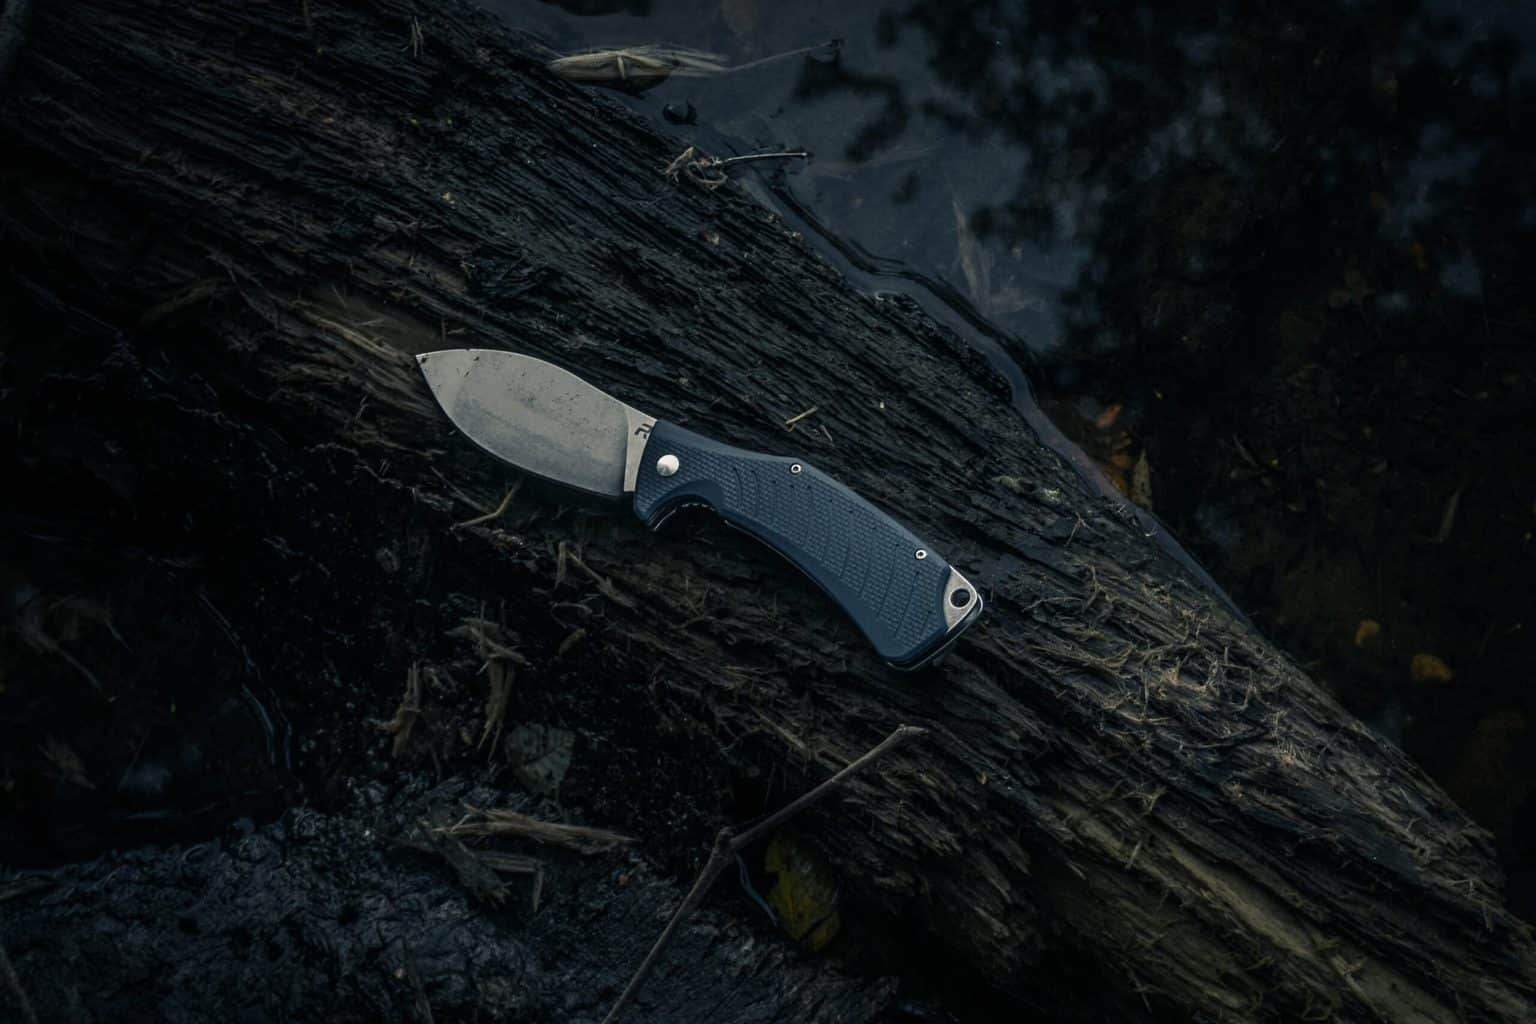 A pocket knife on wood